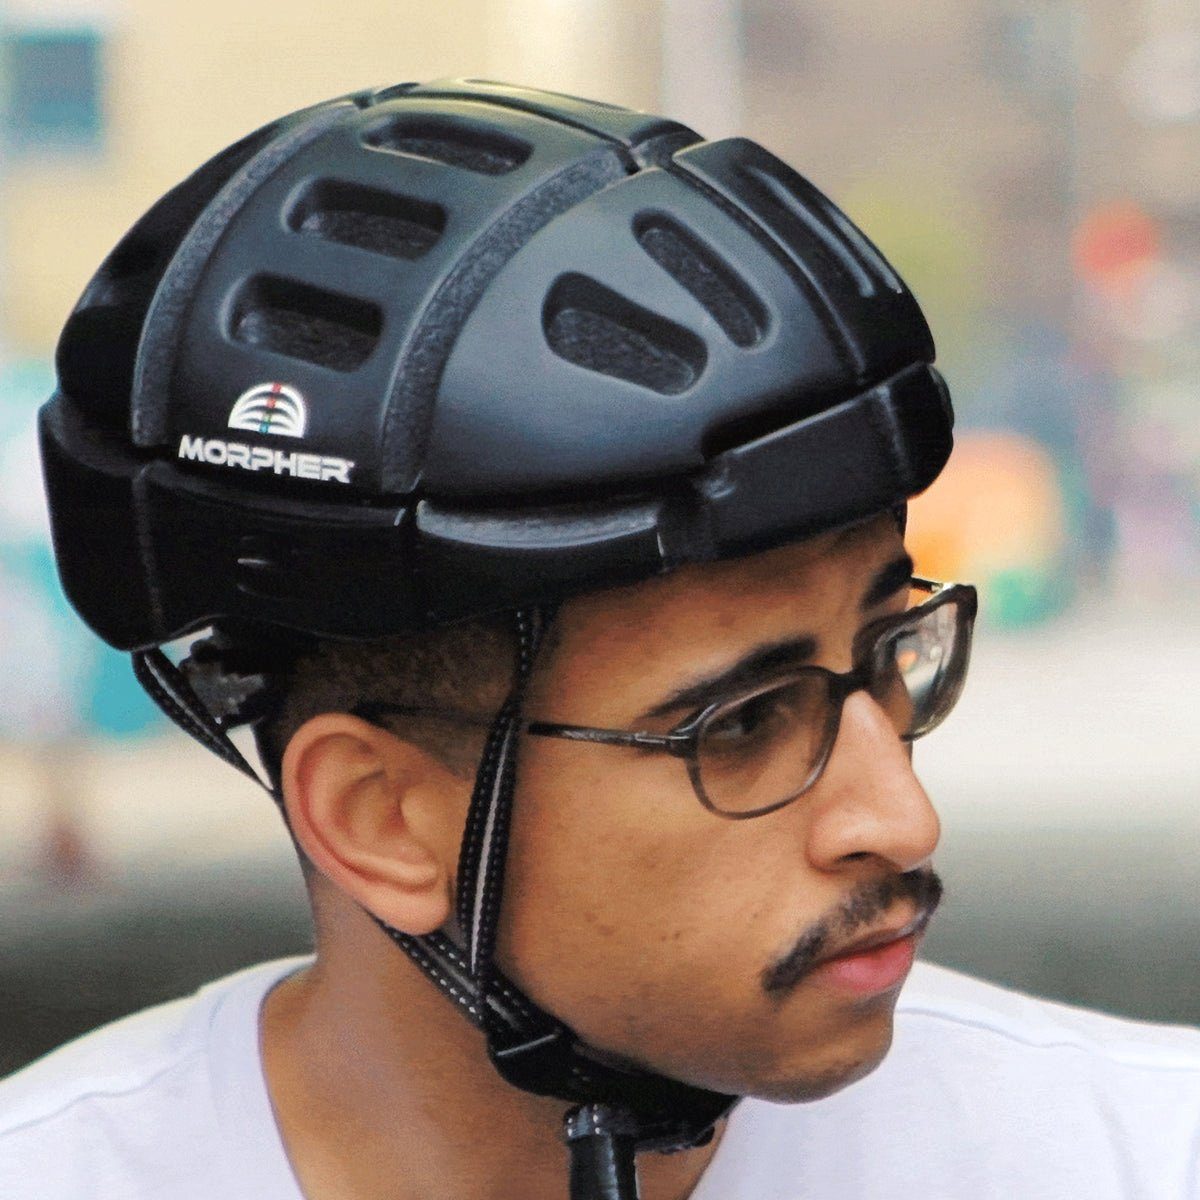 Vigil Helmets Fahrradhelm, Der Morpher Fahrradhelm kann flach  zusammengefaltet werden